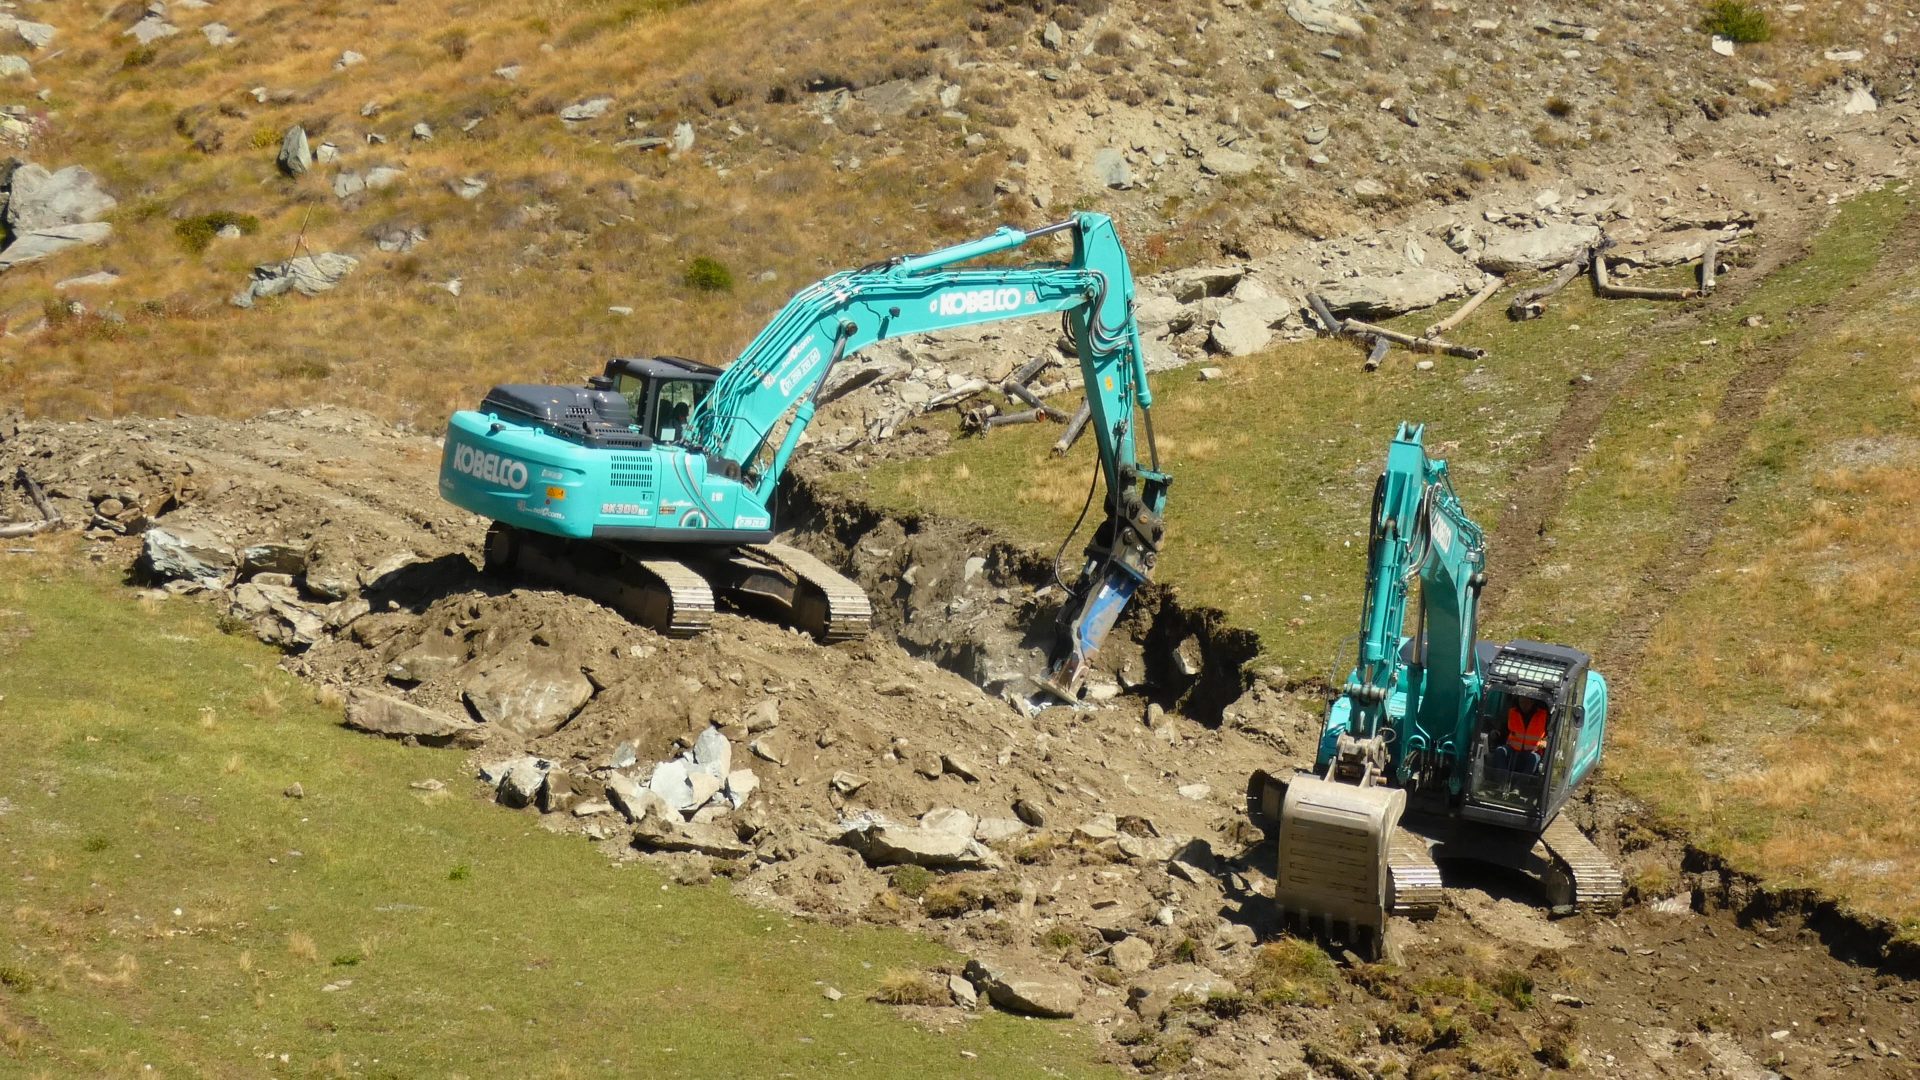 Monterosa SKI ha impiegato i due escavatori per un nuovo impianto di innevamento programmato